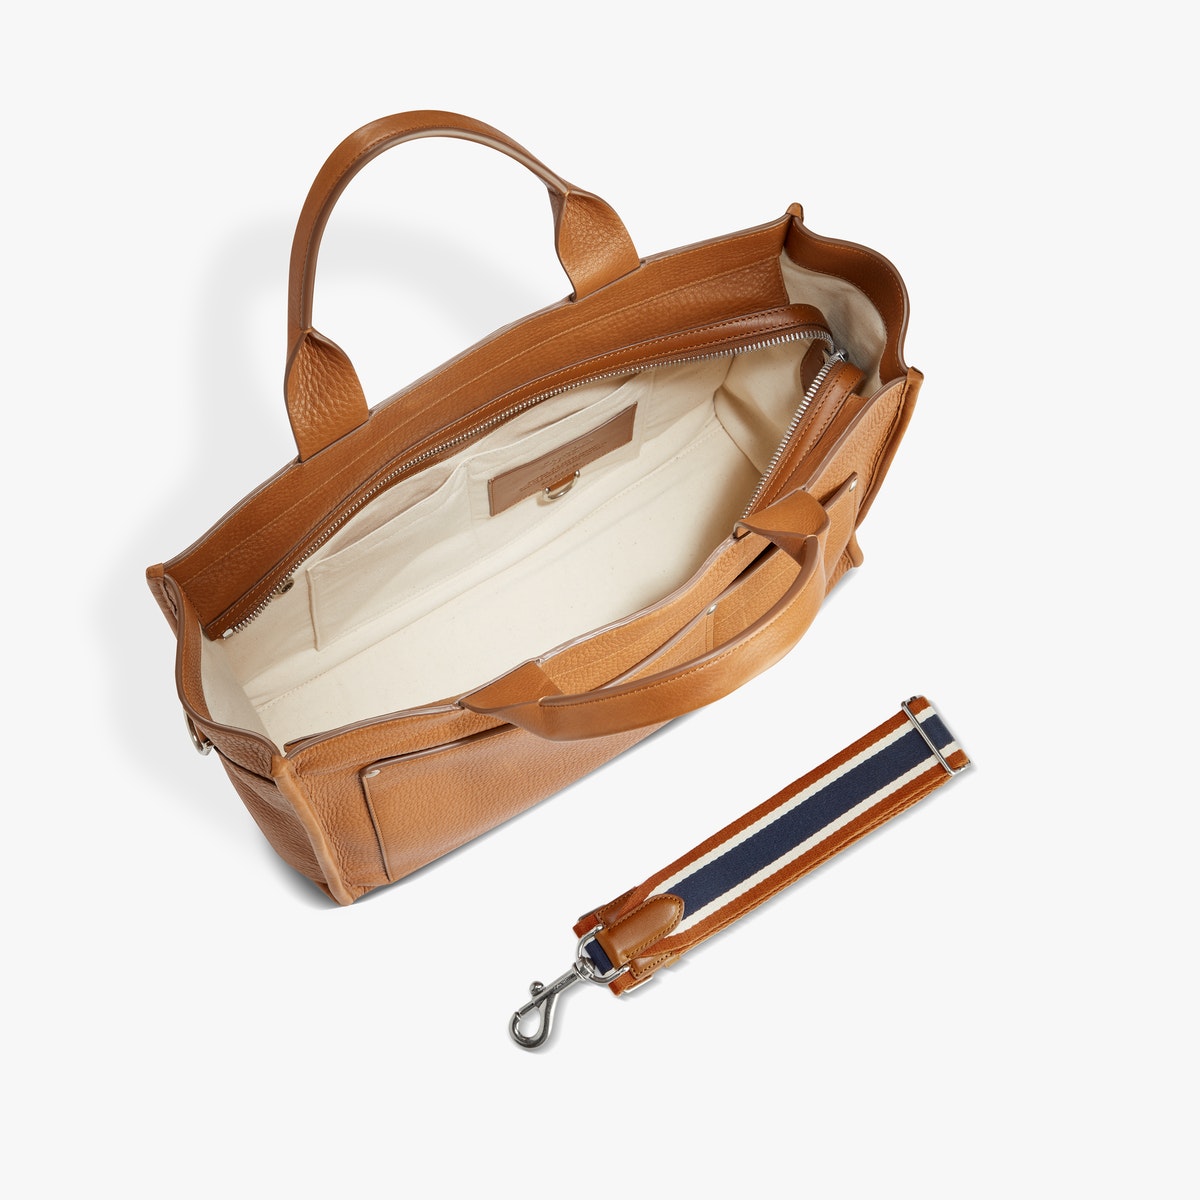 Shinola - "Brief Zip" handbag - Tan